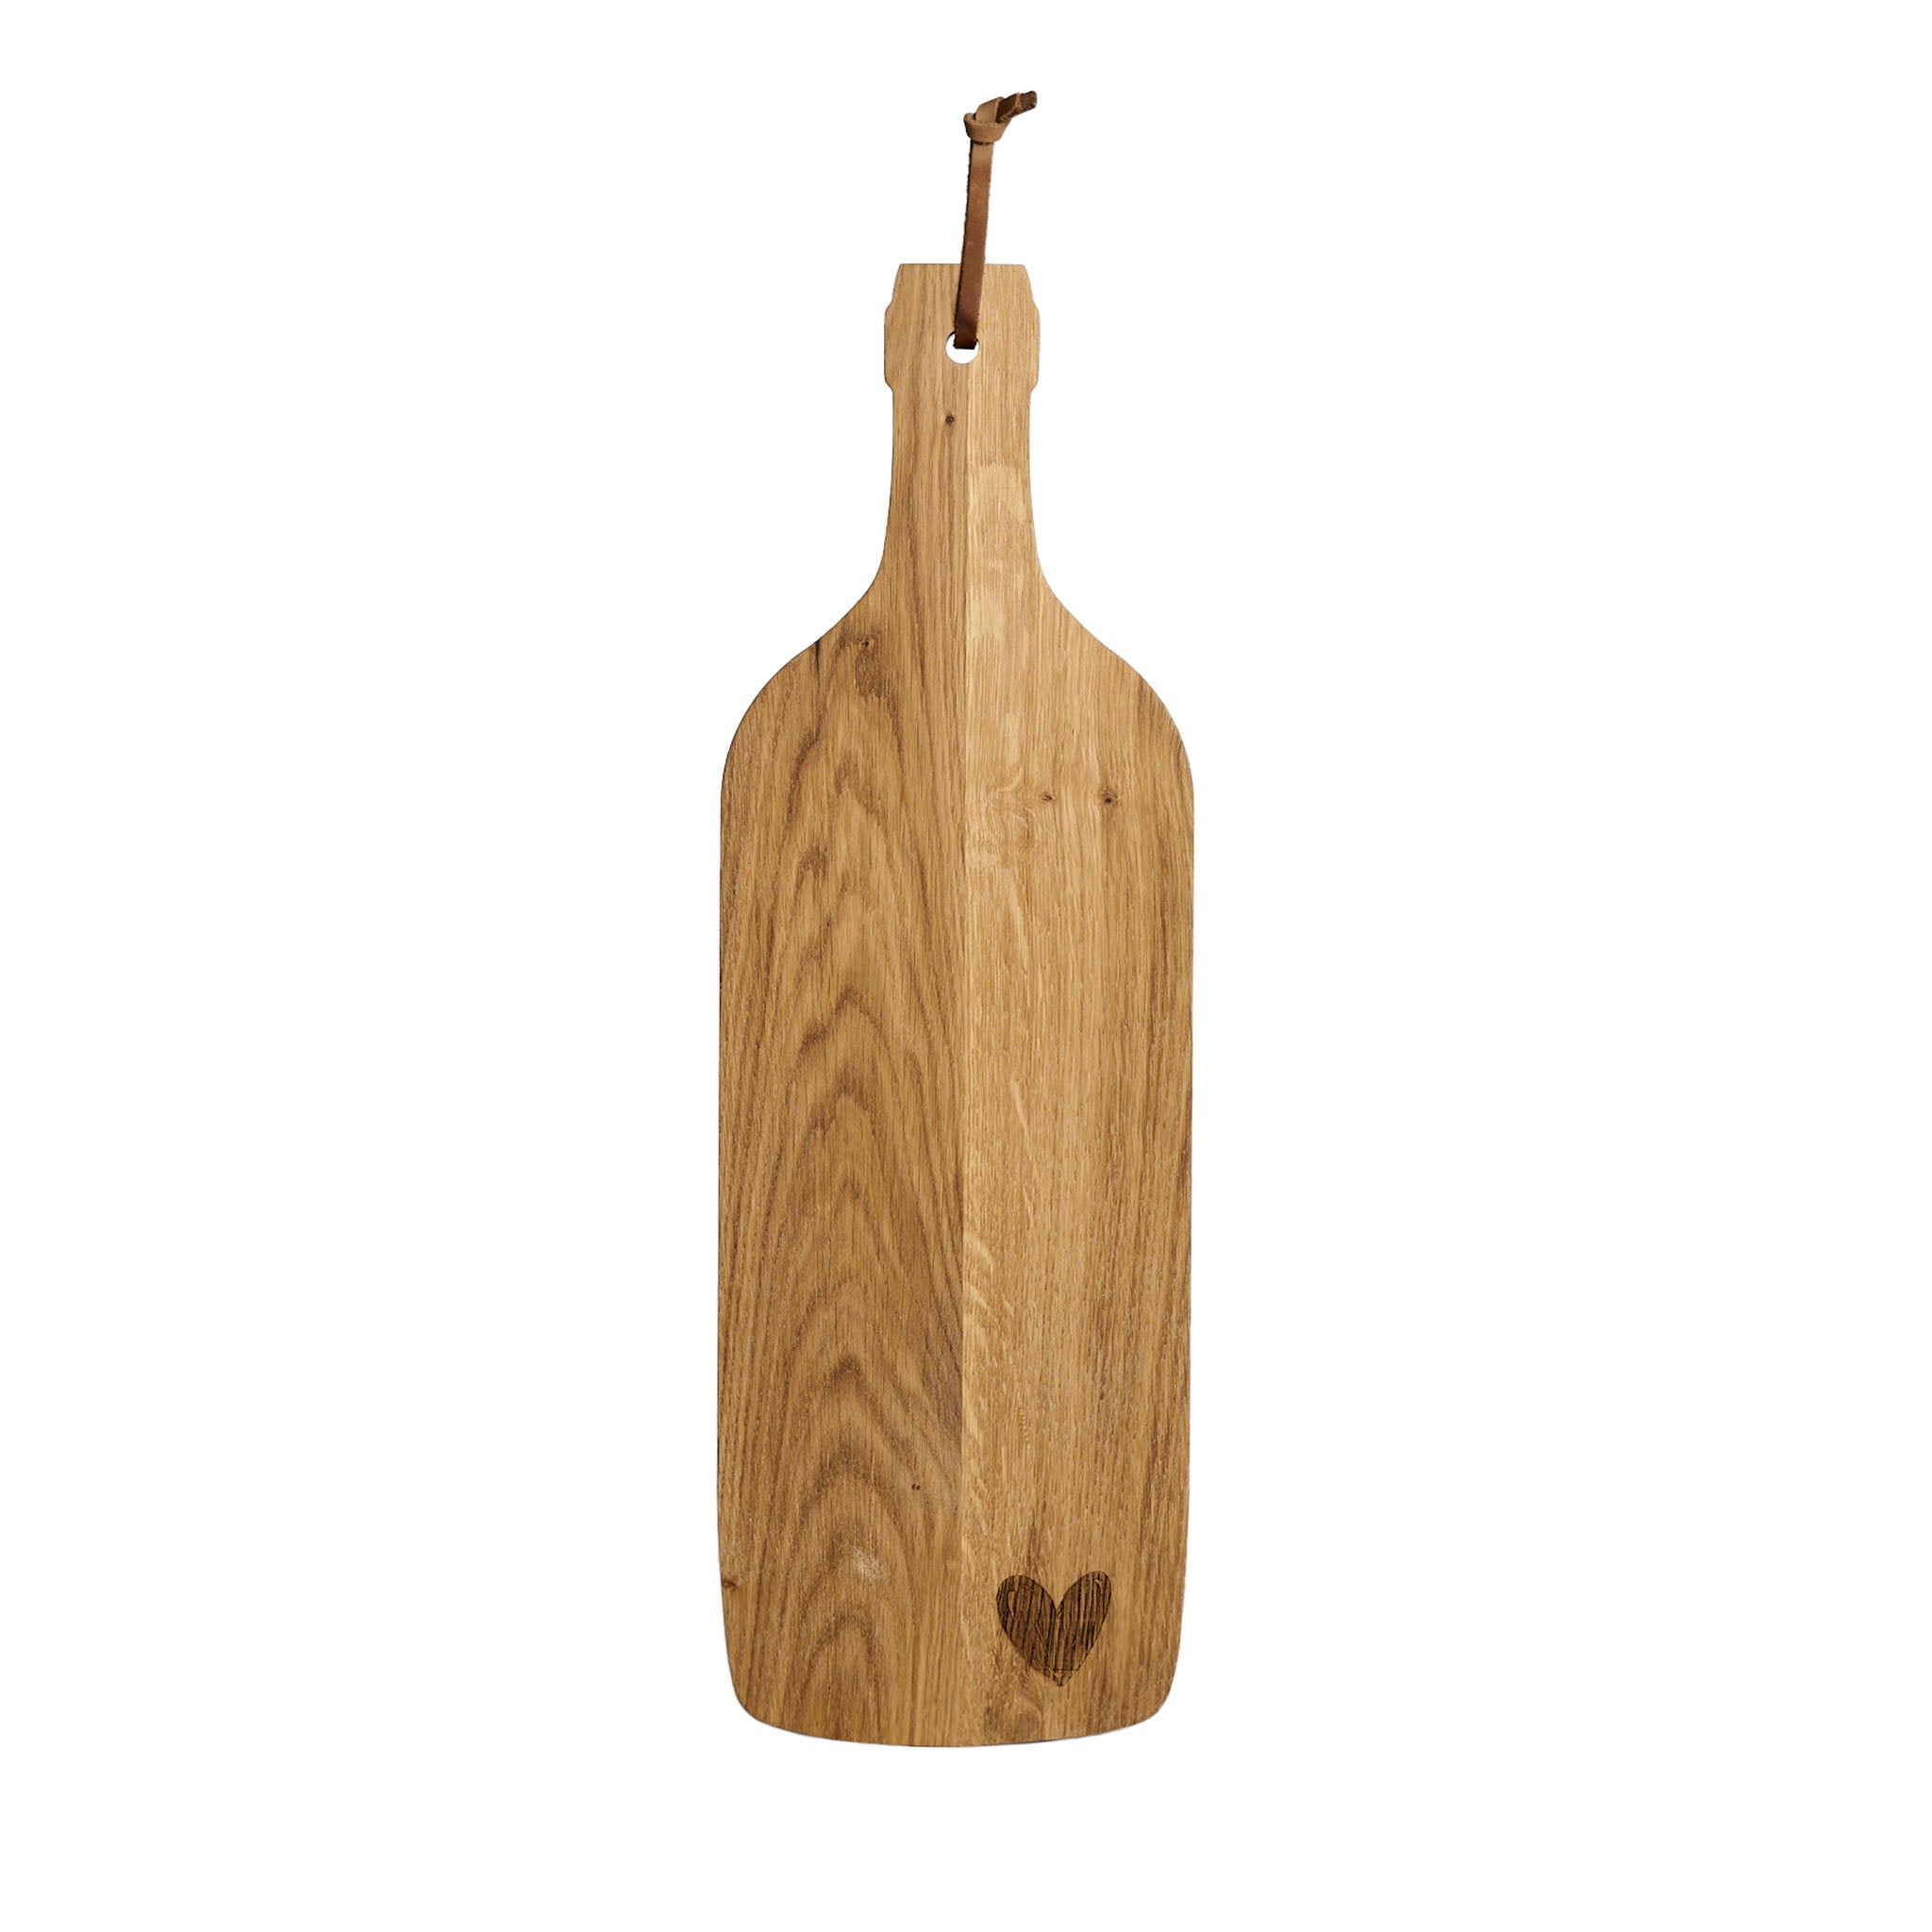 Heart bottle-shaped cutting board